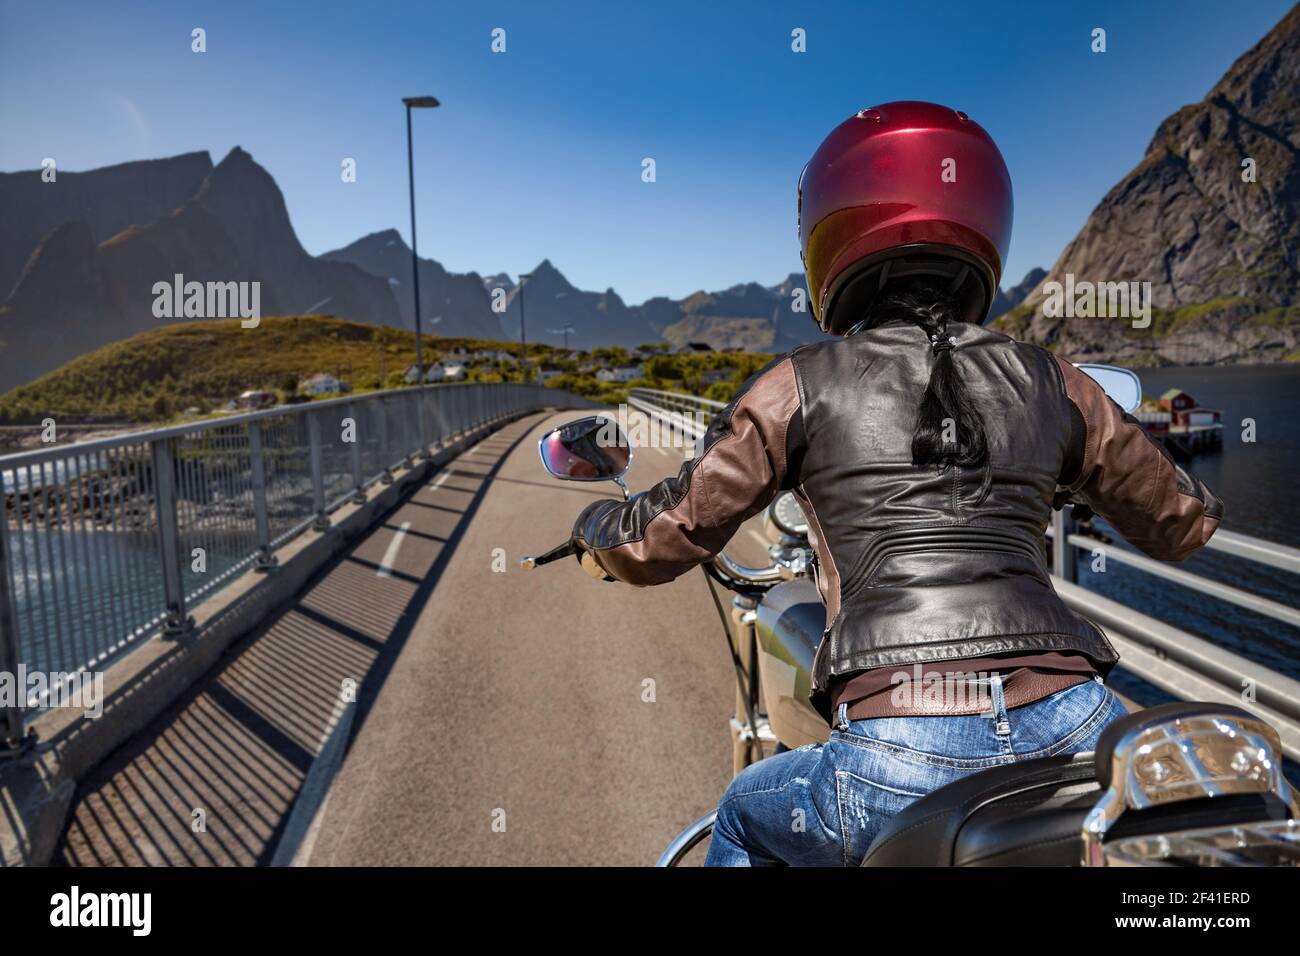 Mädchen Automechaniker in Einem Helm Sieht in Einem Motorrad Spiegel Und  Malt Lippen Stockfoto - Bild von radfahrer, lippenstift: 218568090